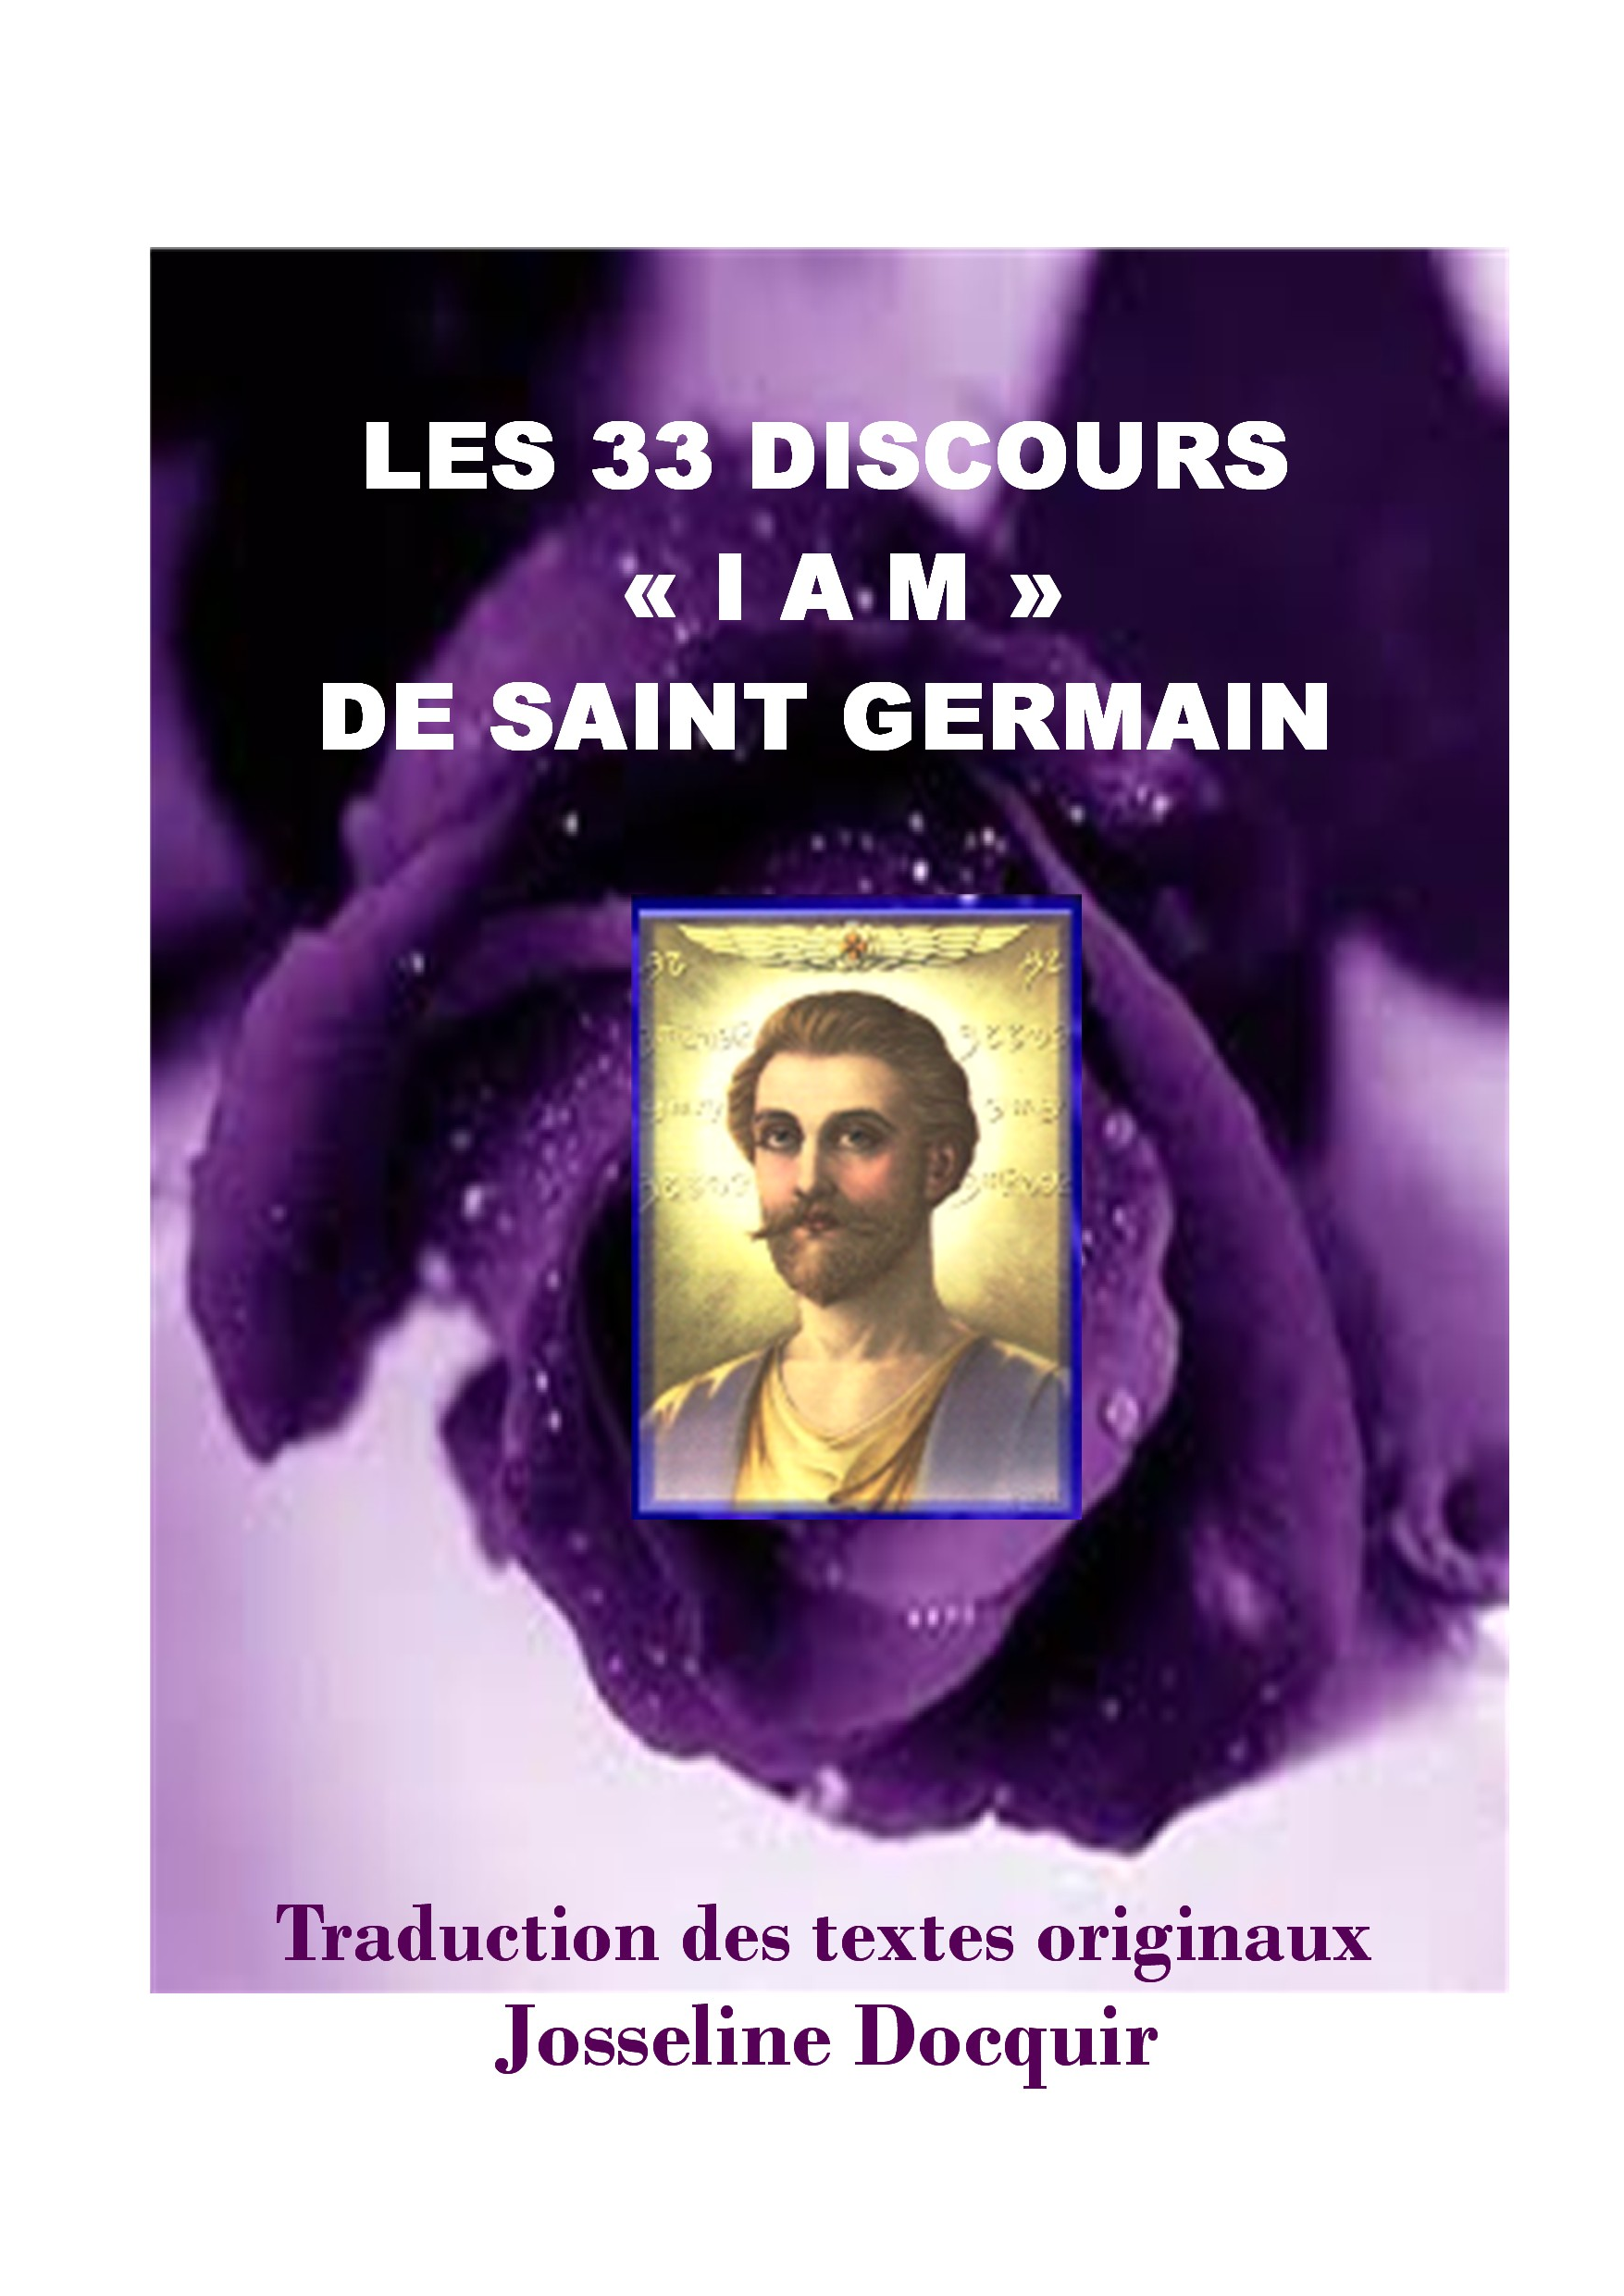 LES 33 DISCOURS "I AM" DE ST GERMAIN